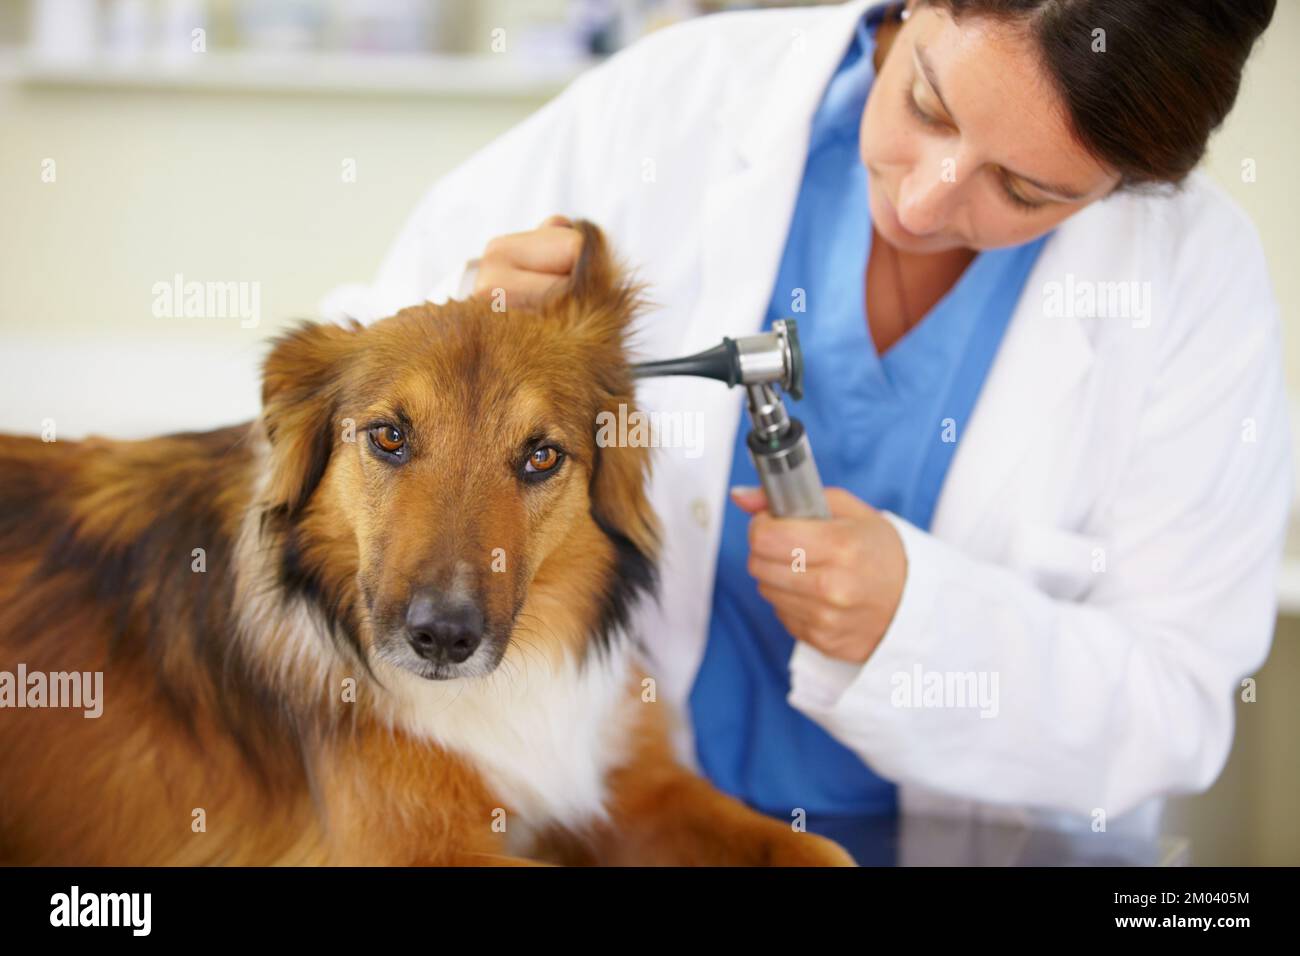 Eine komplette Untersuchung. Ein Tierarzt untersucht ein Hundeohr. Stockfoto